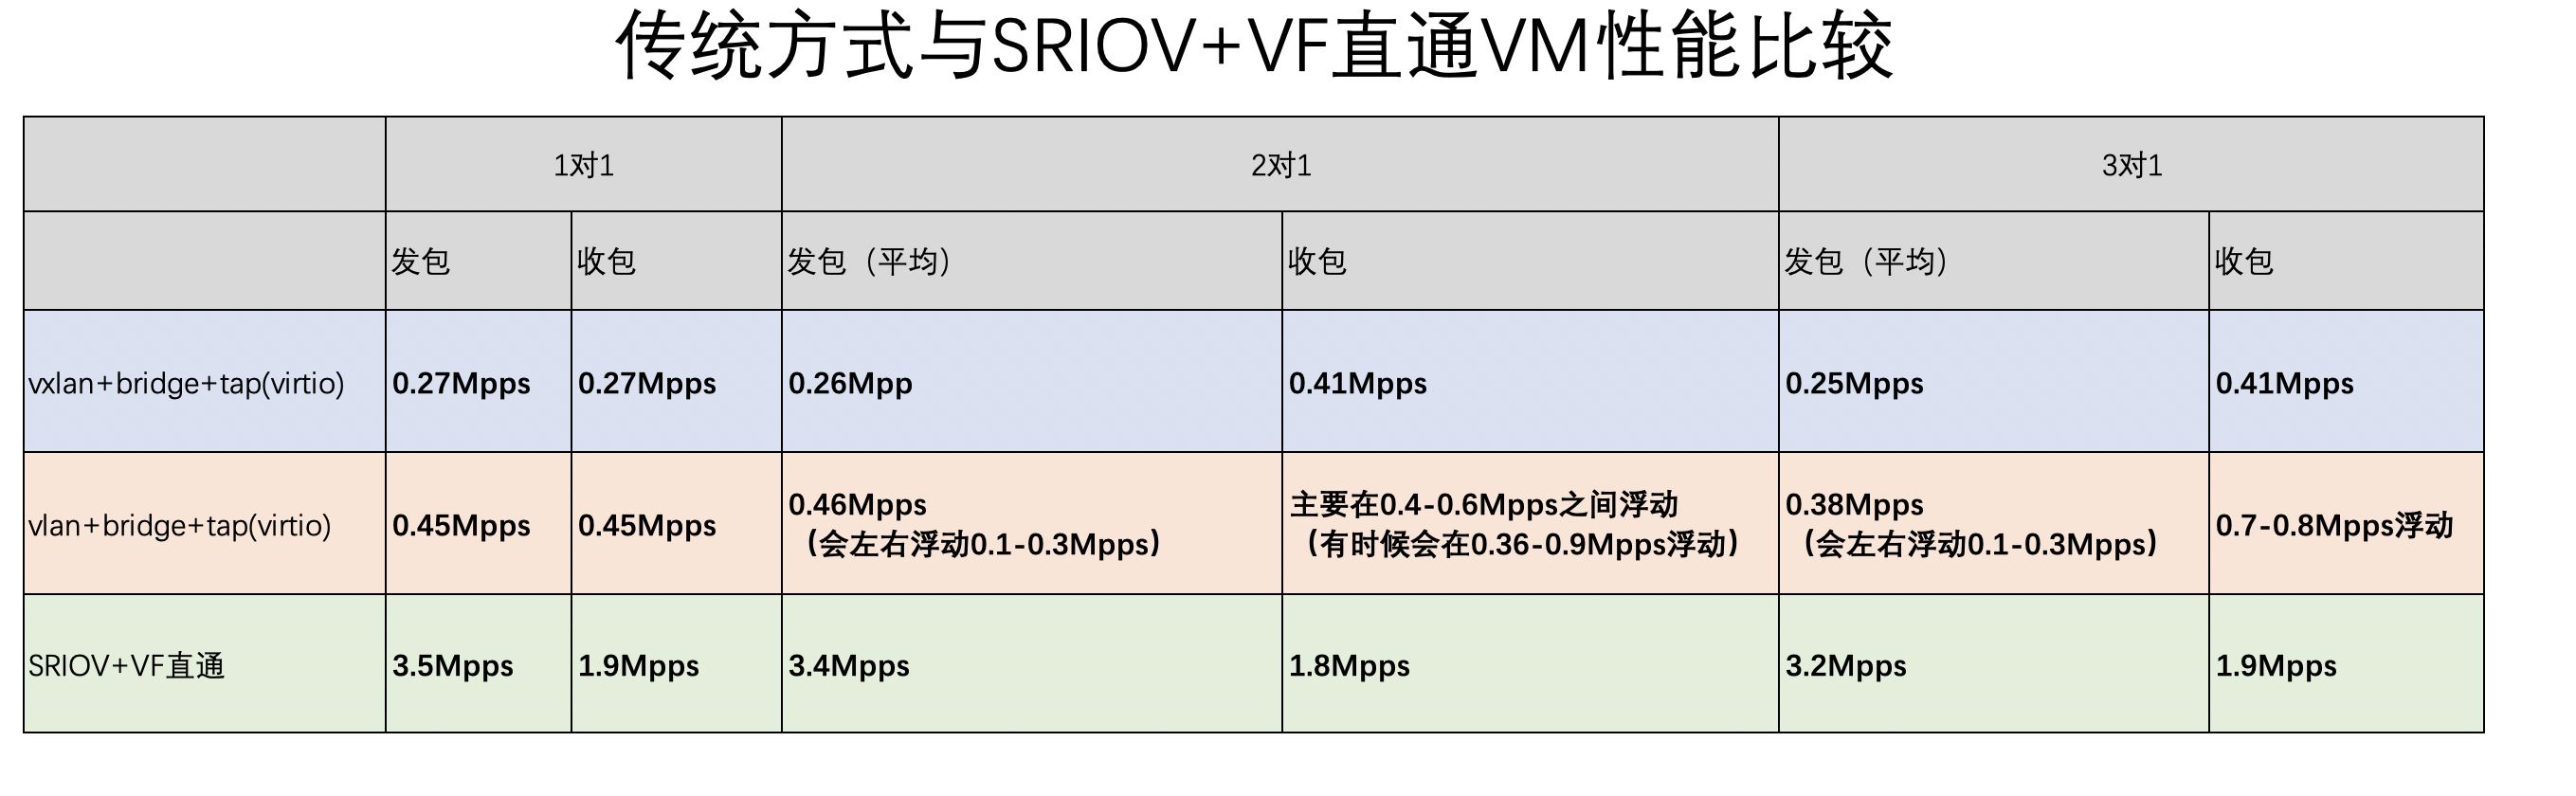 基于KVM中SRIOV直通配置及性能测试的示例分析